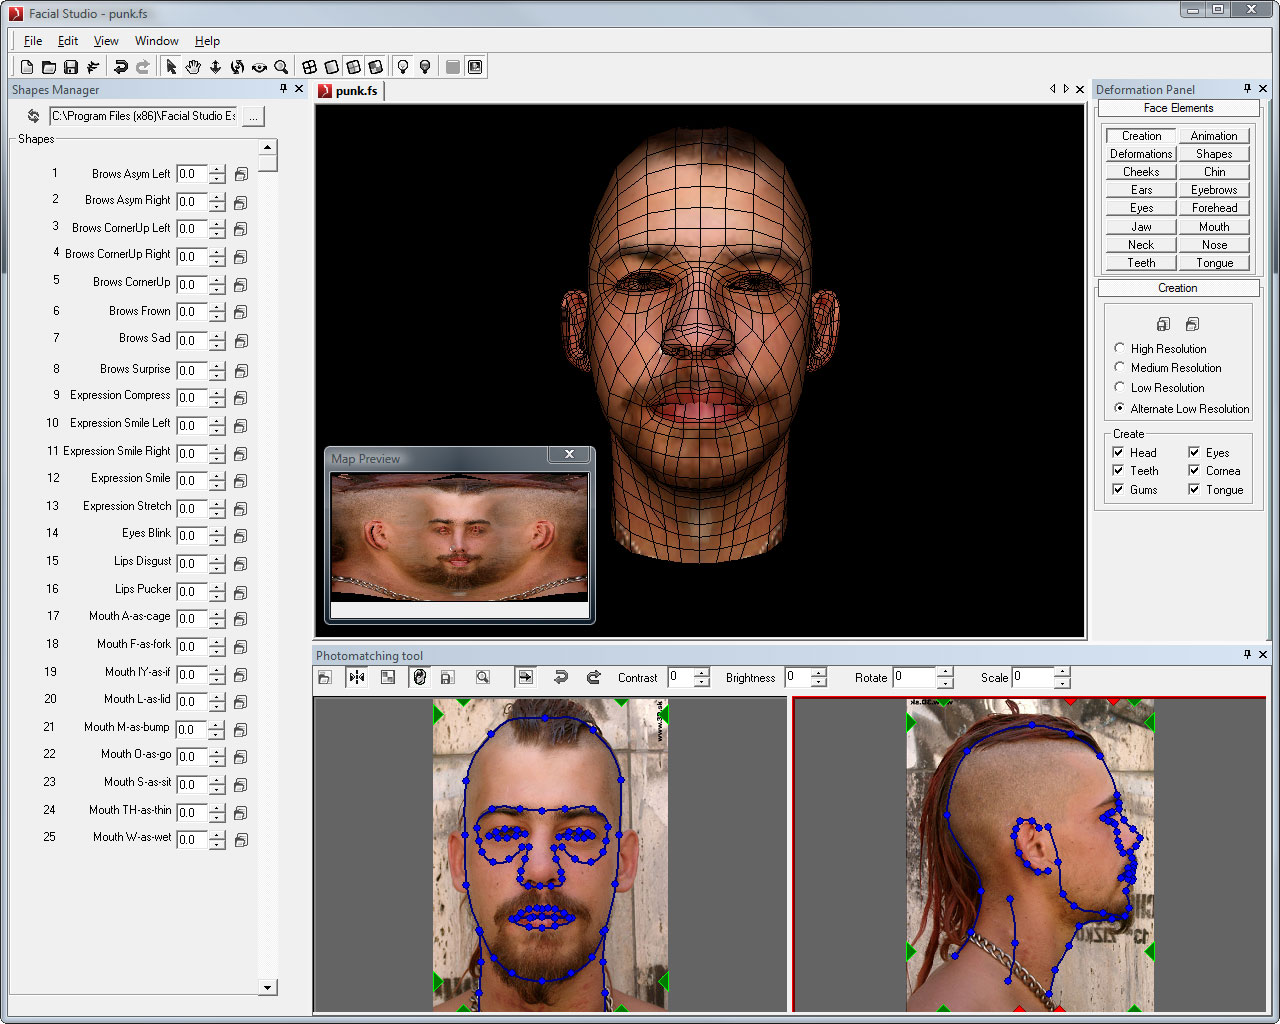 Screenshot for Facial Studio for Windows 3.0